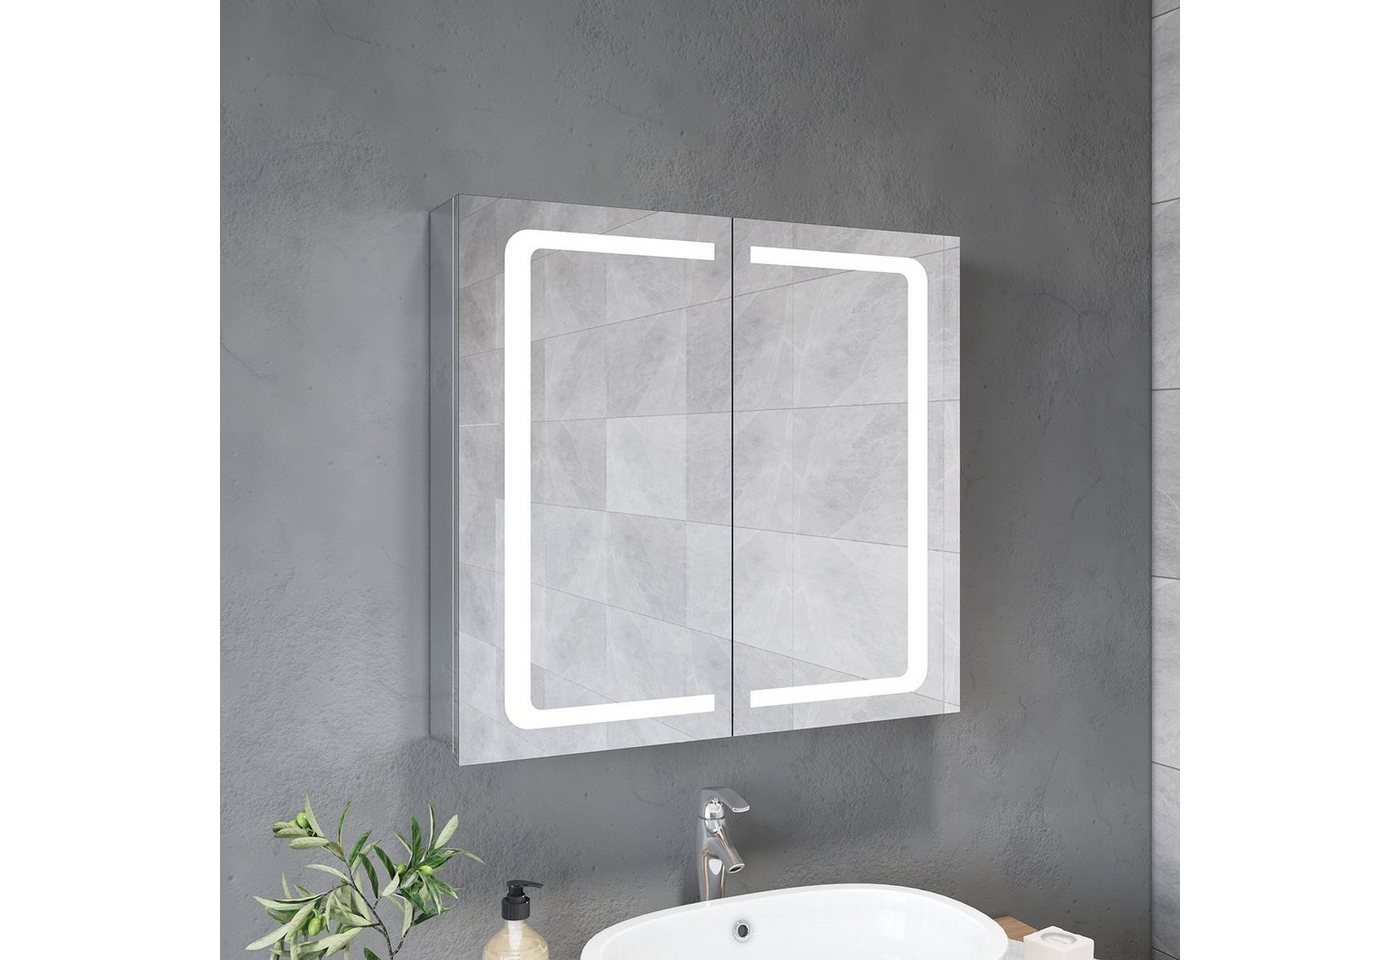 SONNI Badezimmerspiegelschrank Spiegelschrank 2-türig Bad LED Beleuchtung Badspiegel 70cm Breite Steckdose, Badschrank, Badezimmerspiegelschrank von SONNI